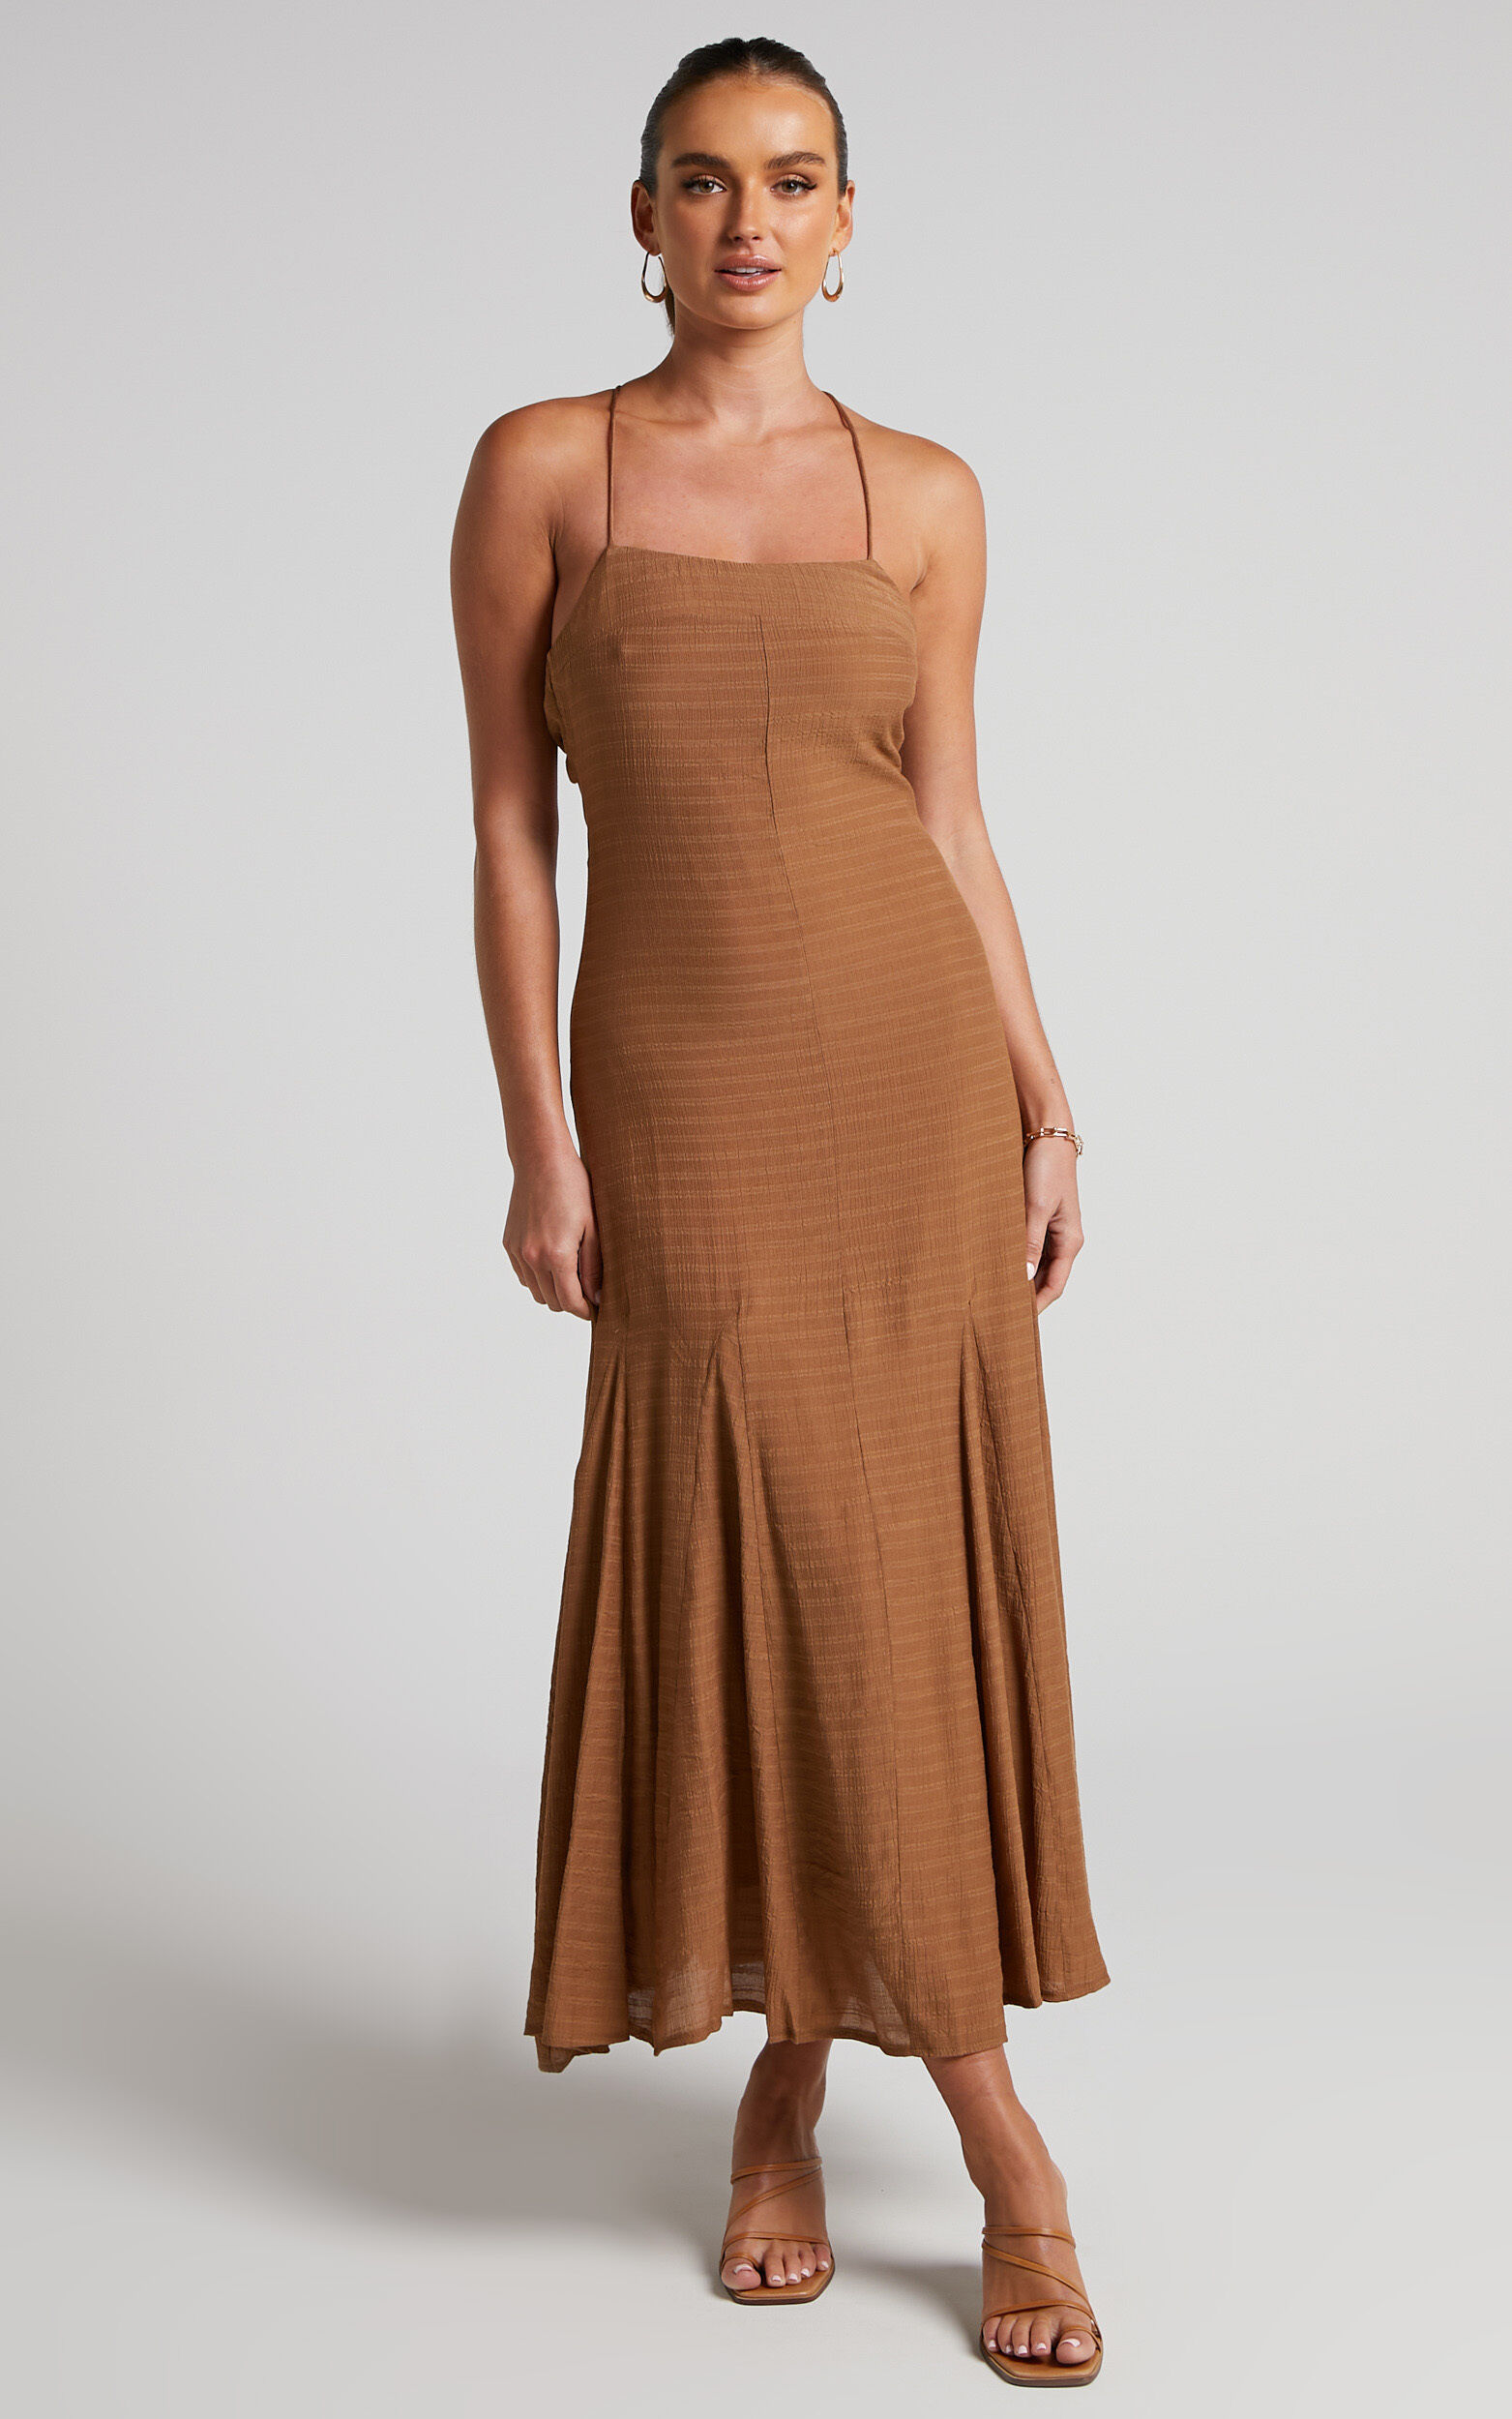 Romarie Midi Dress - Tie Back Slip Dress in Brown - 06, BRN2